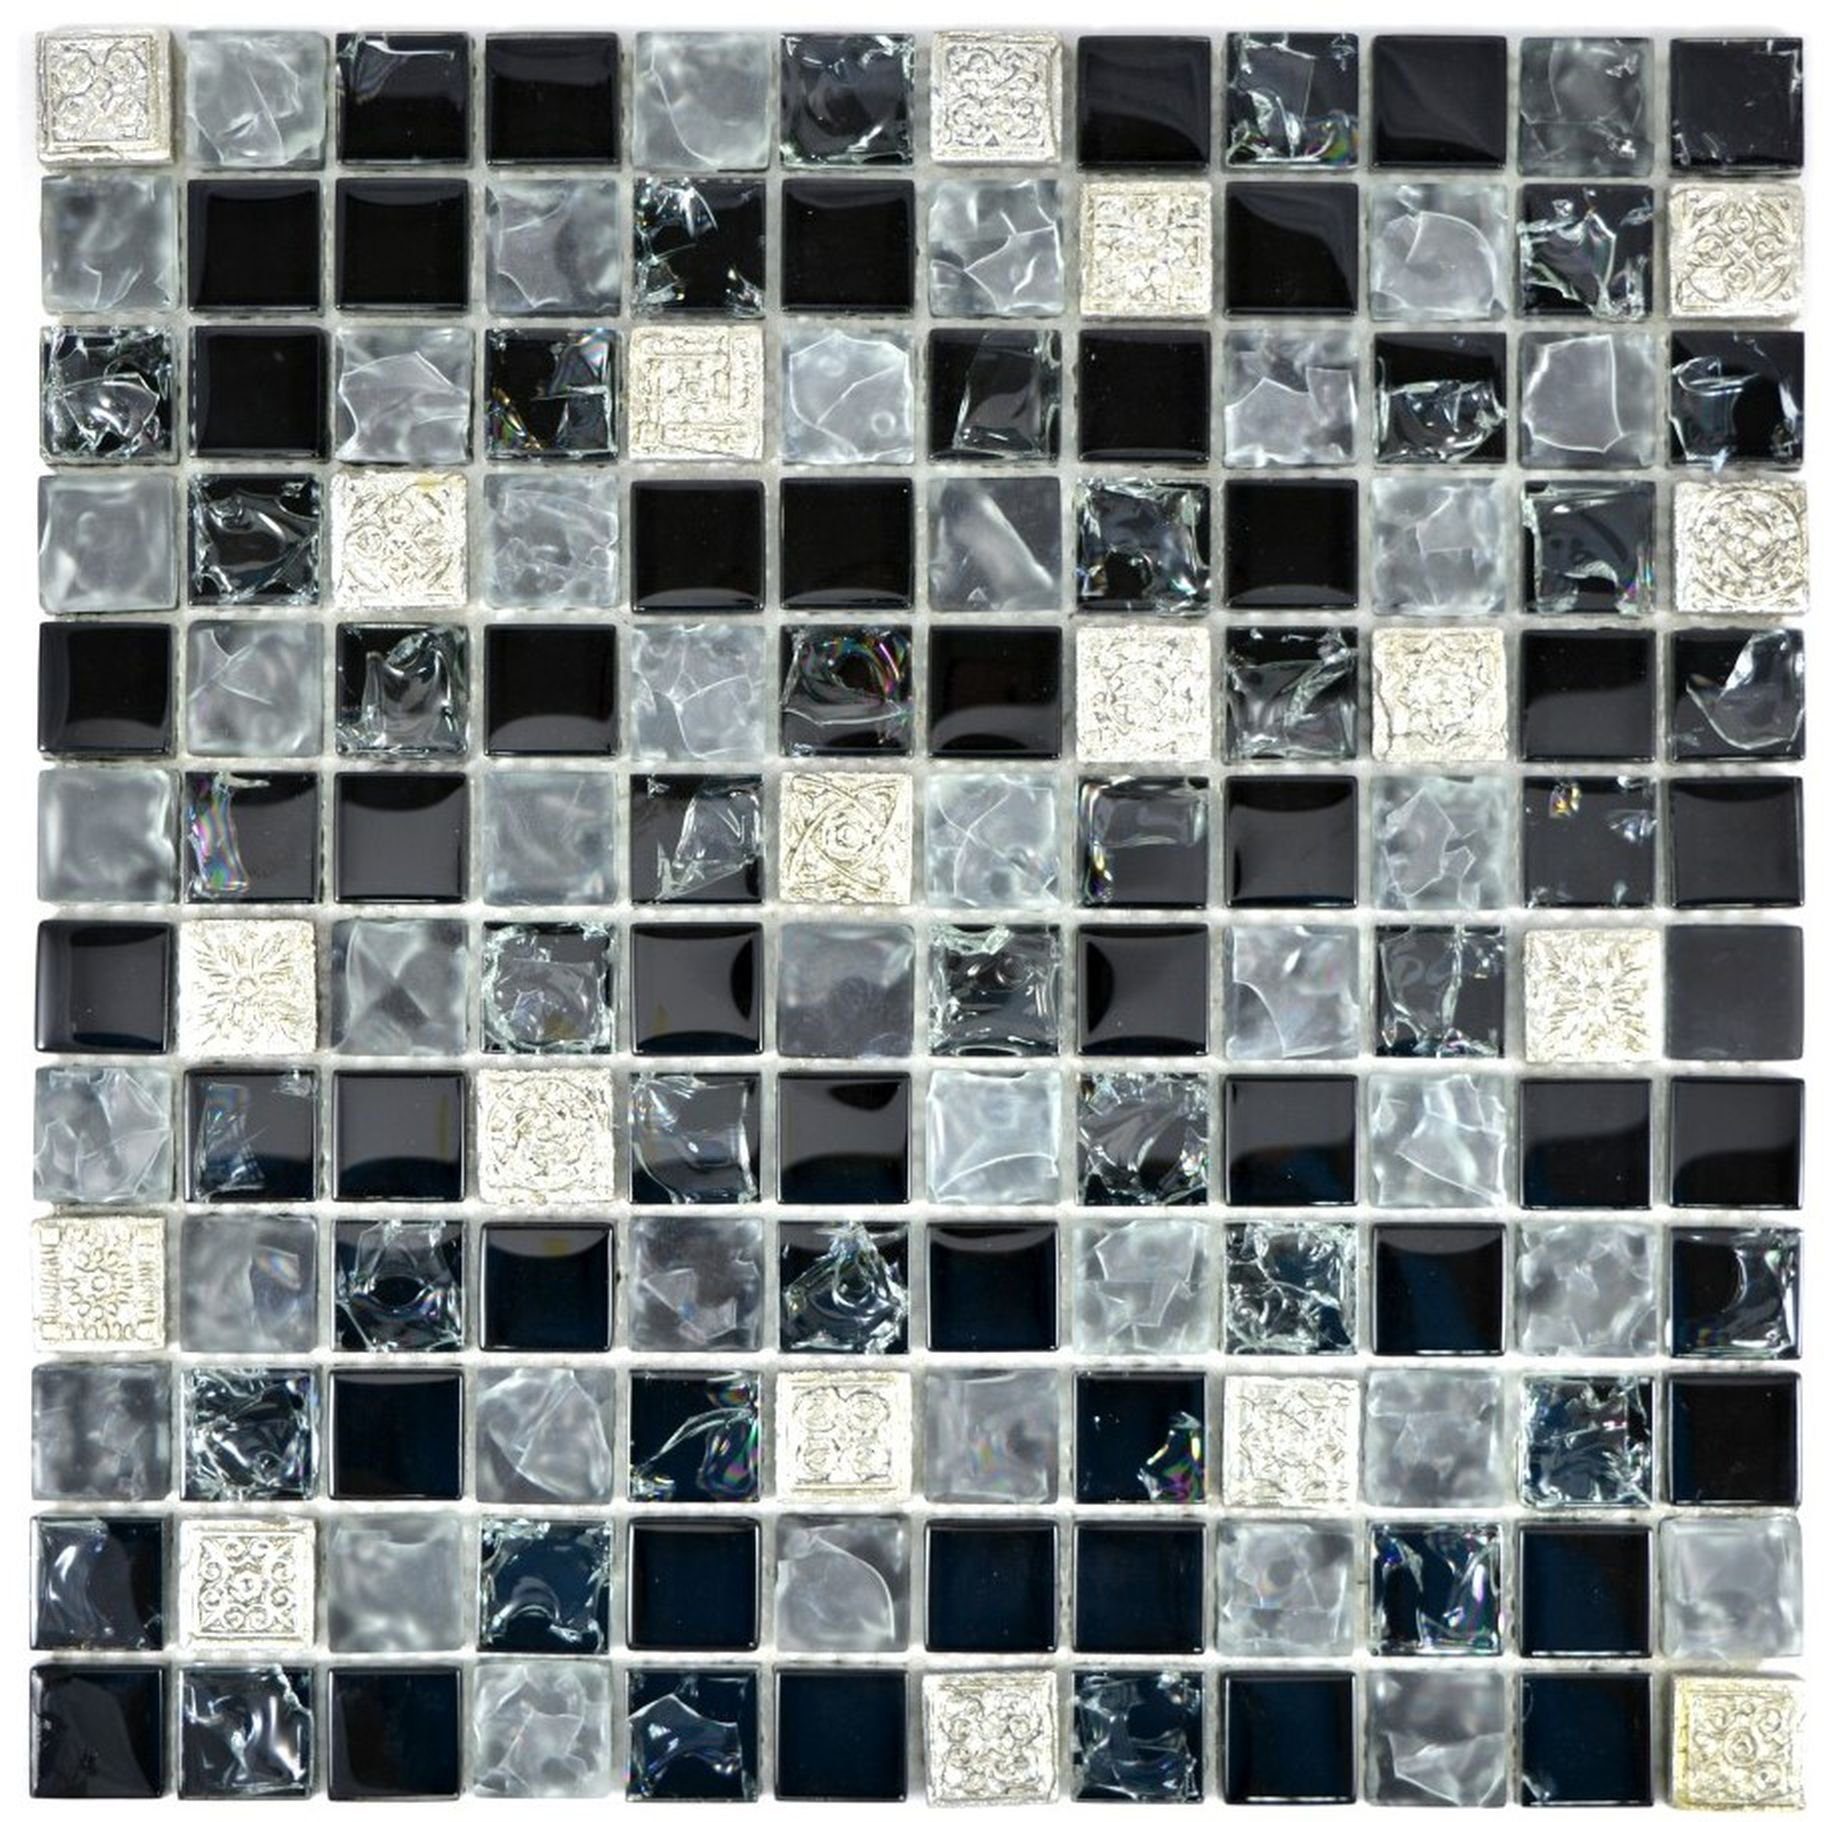 Mosani Mosaikfliesen Glasmosaik Mosaikfliesen grau schwarz Resin silber gefrostet